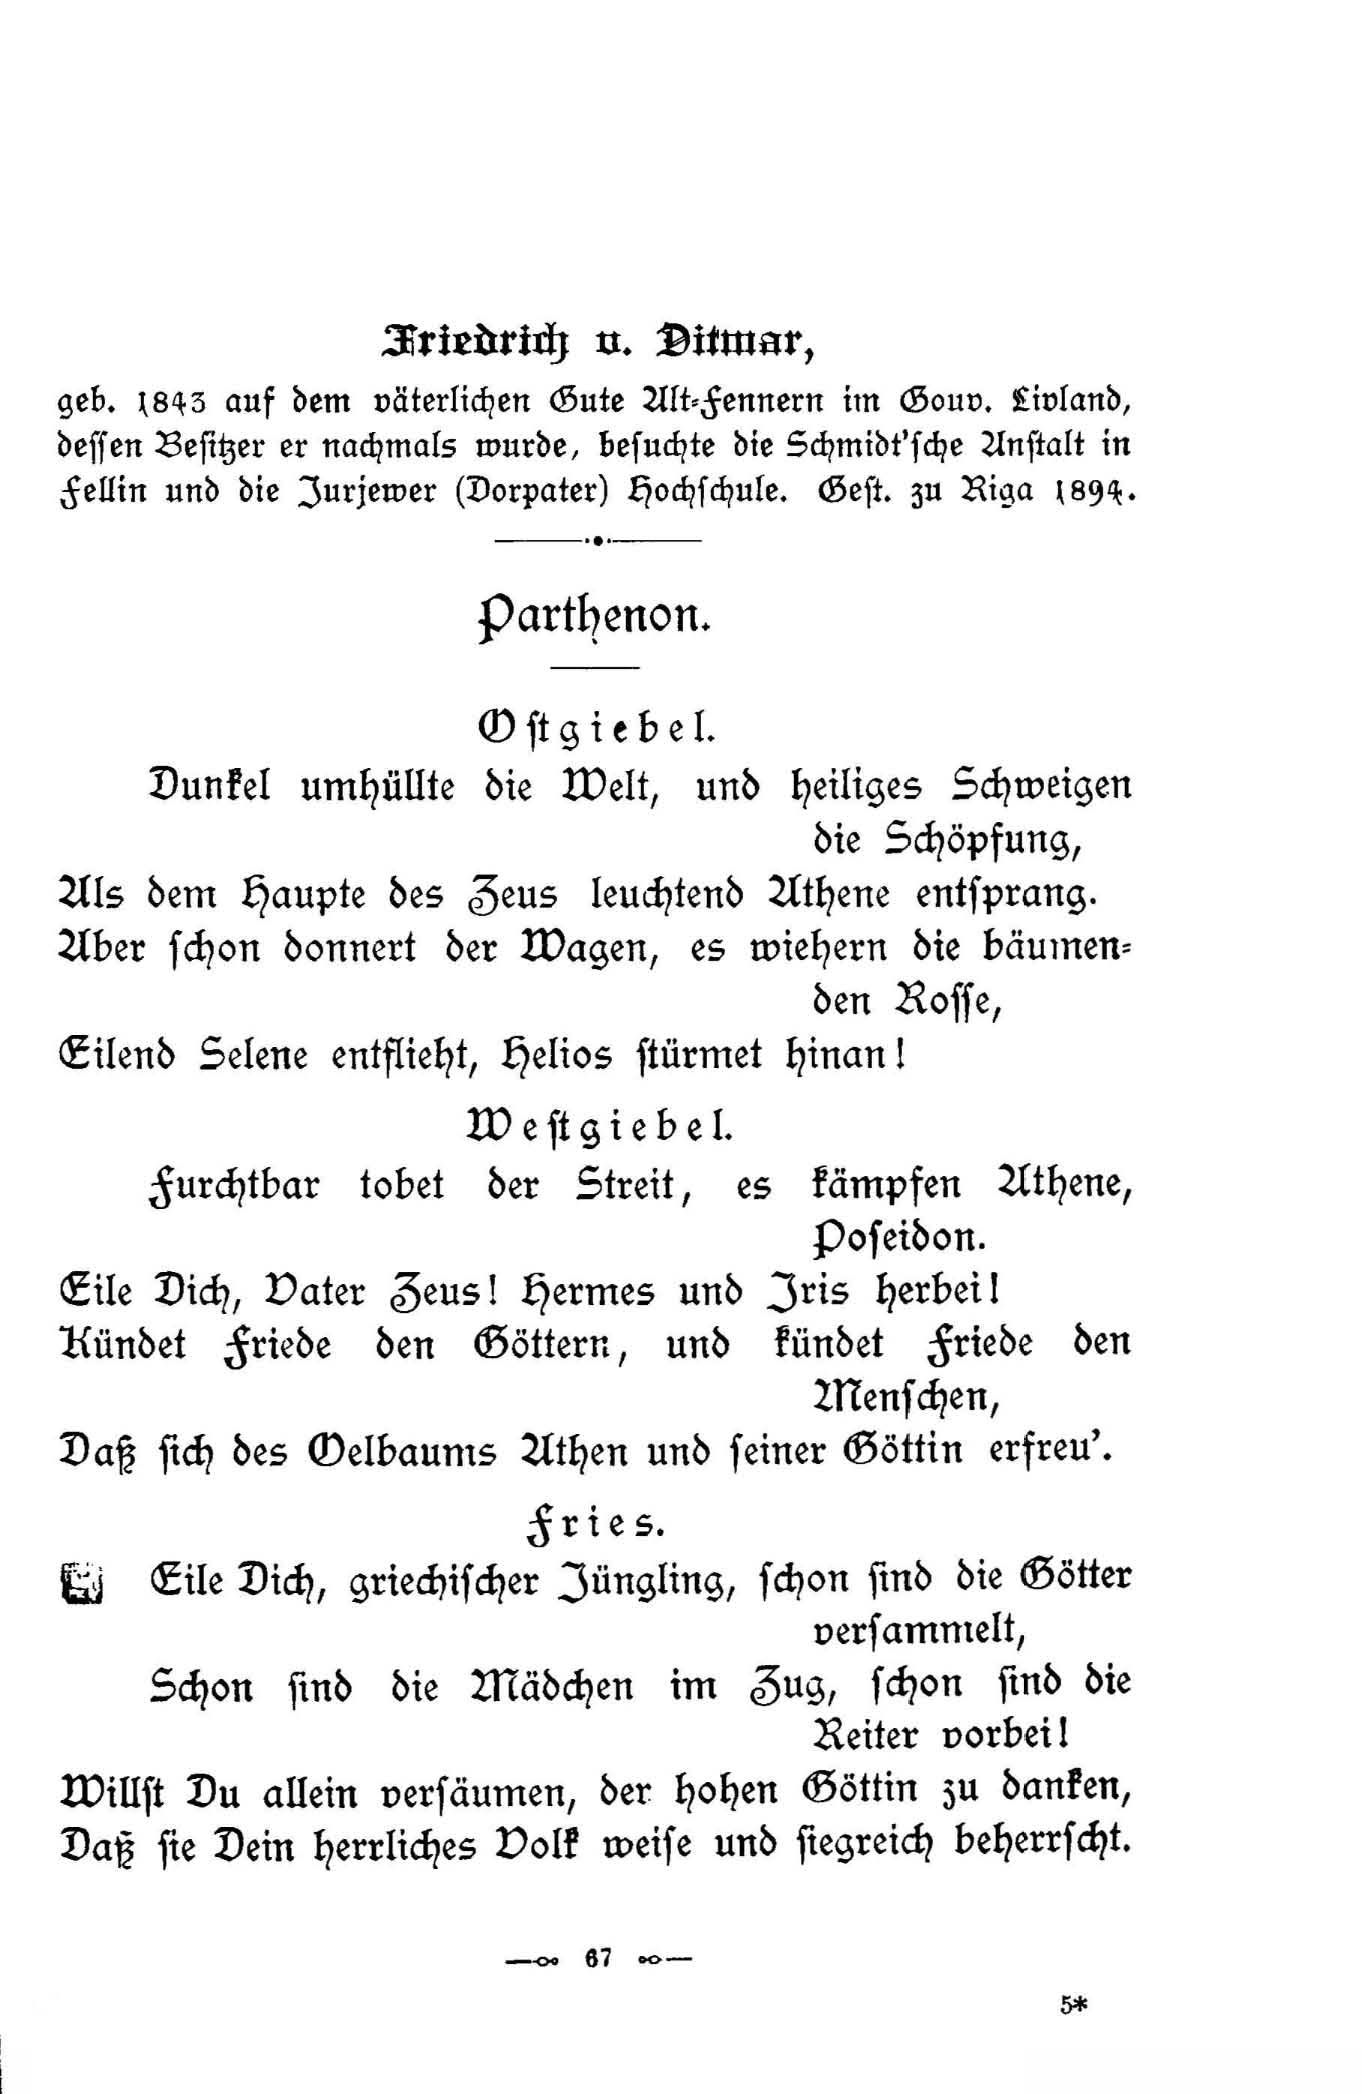 Parthenon (1896) | 1. (67) Haupttext